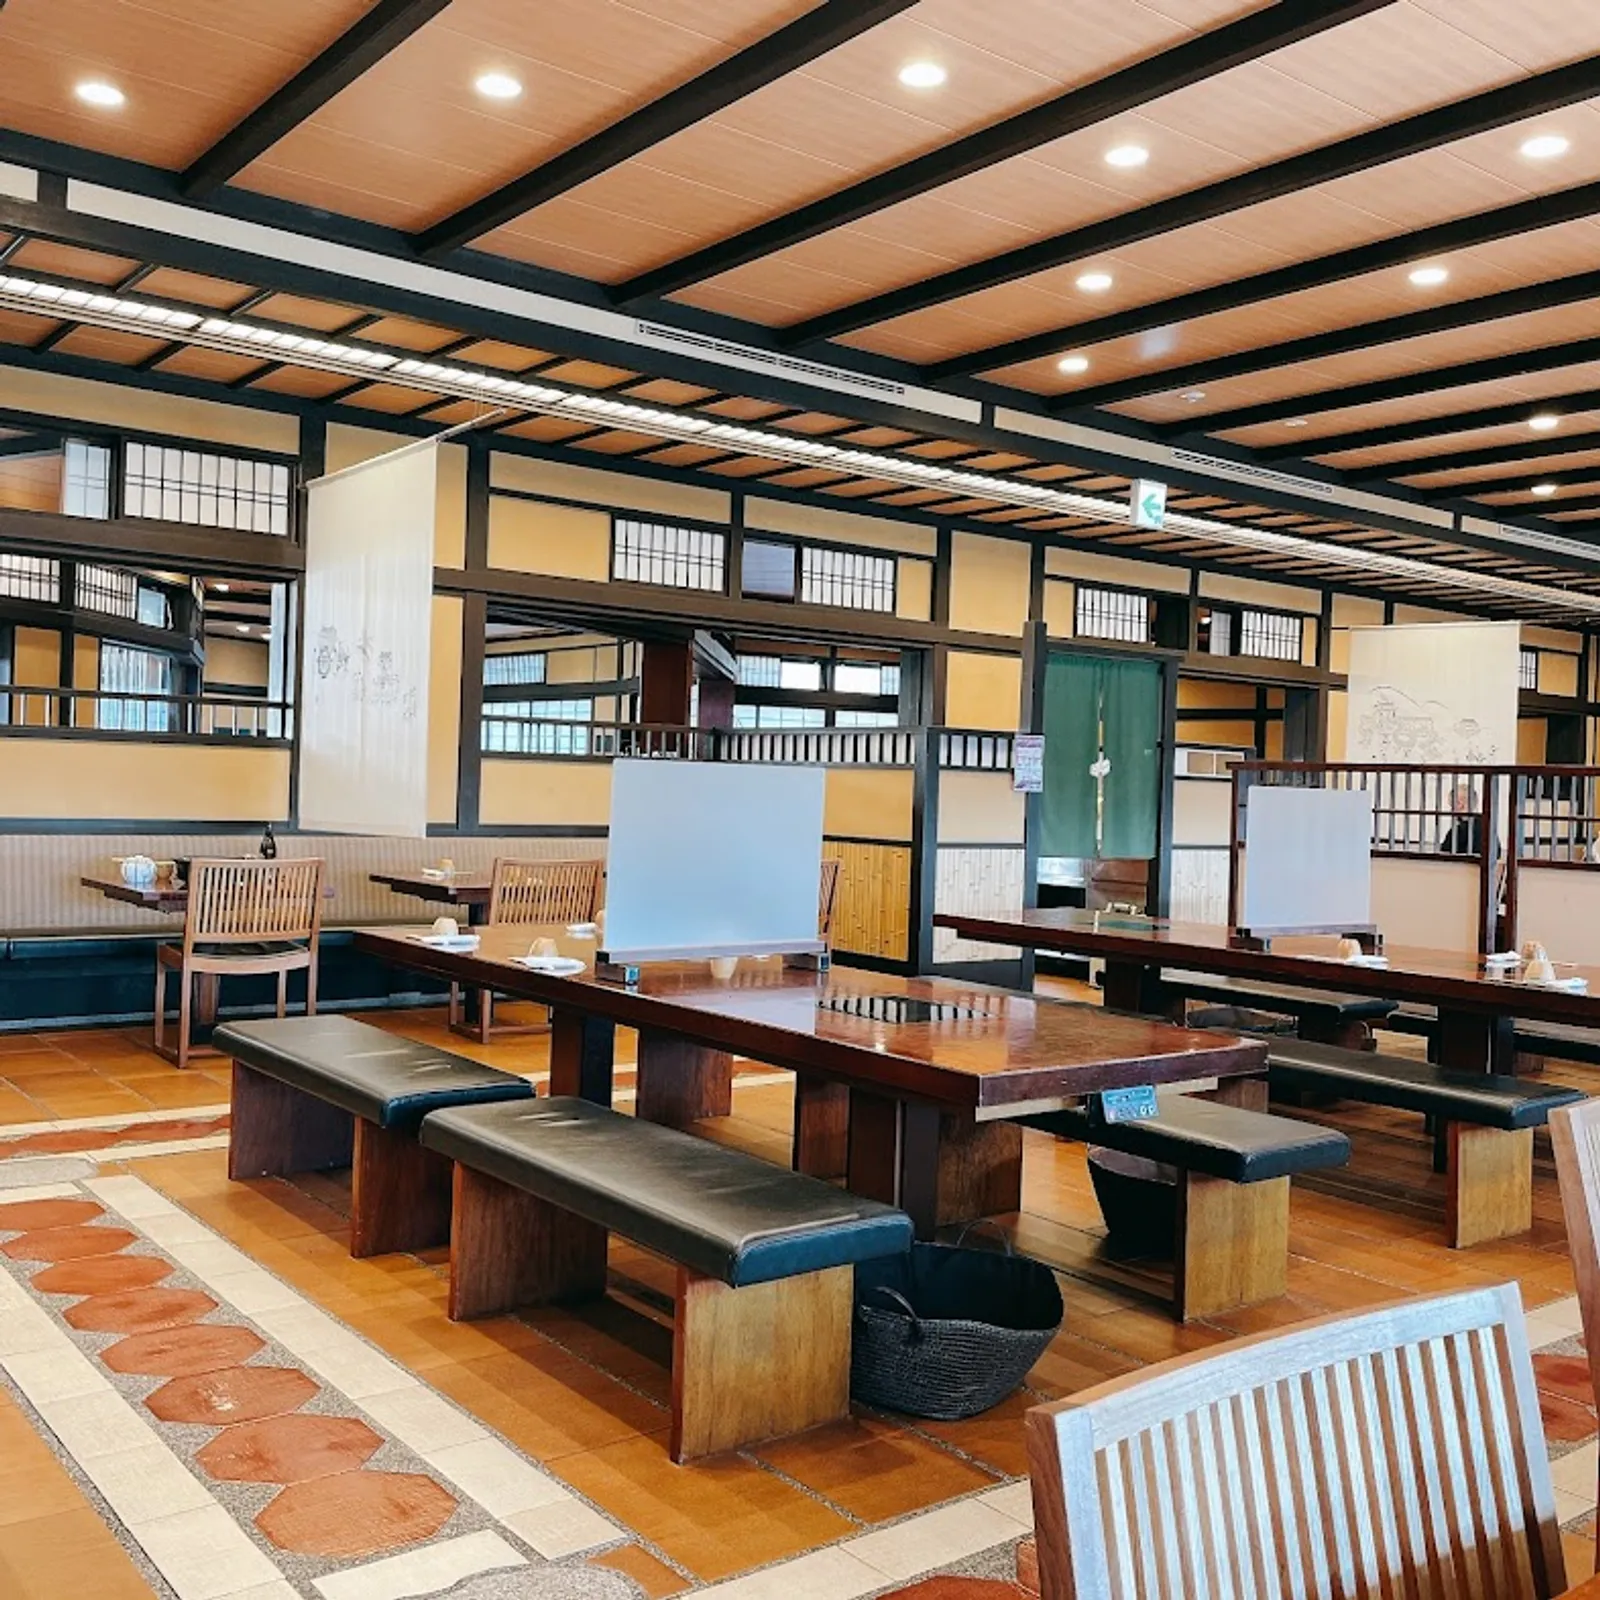 7 Rekomendasi Restoran Halal di Kyoto yang Makanannya Serba Enak